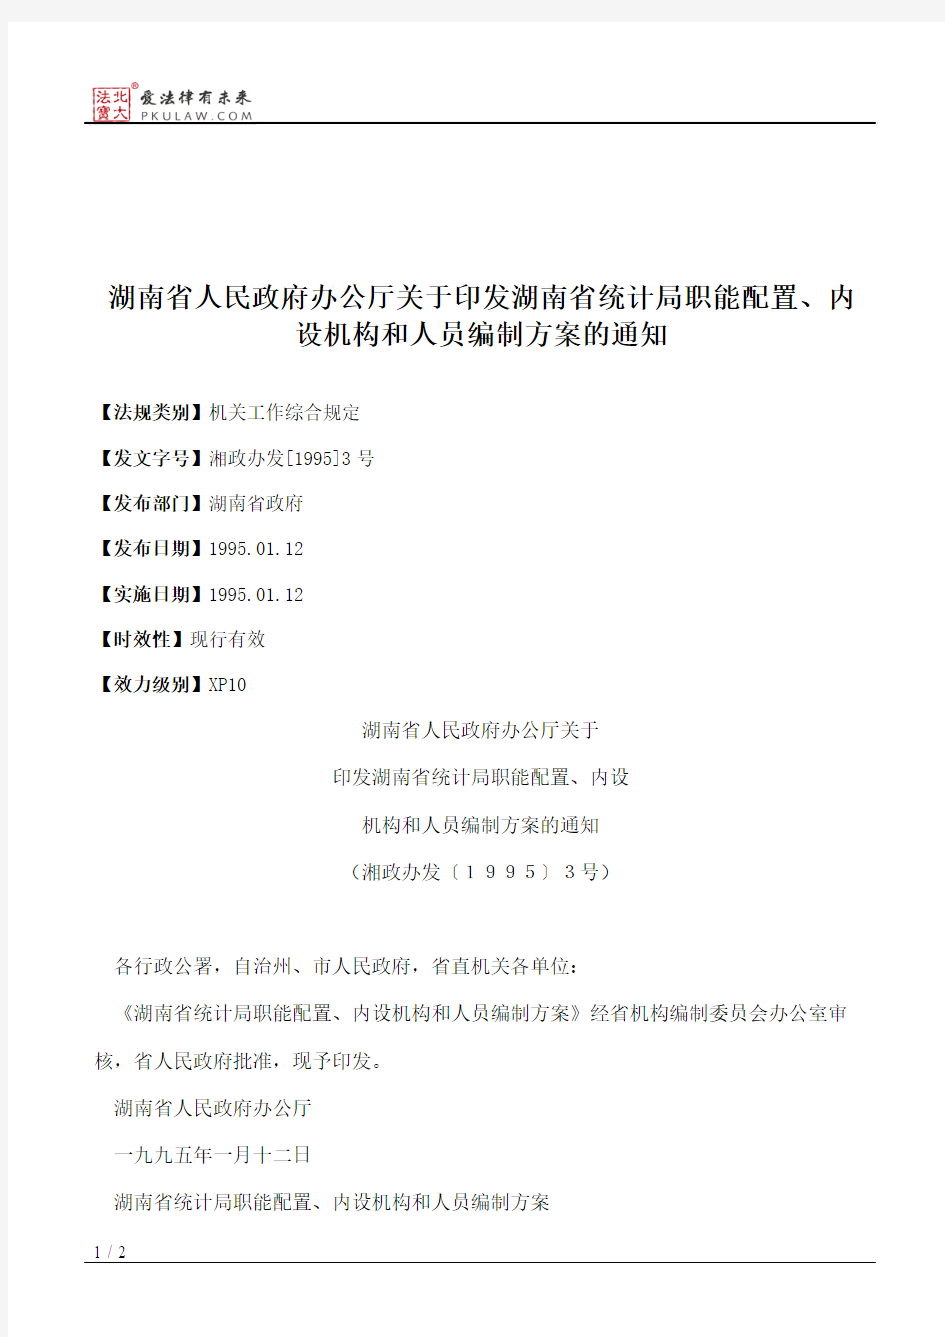 湖南省人民政府办公厅关于印发湖南省统计局职能配置、内设机构和